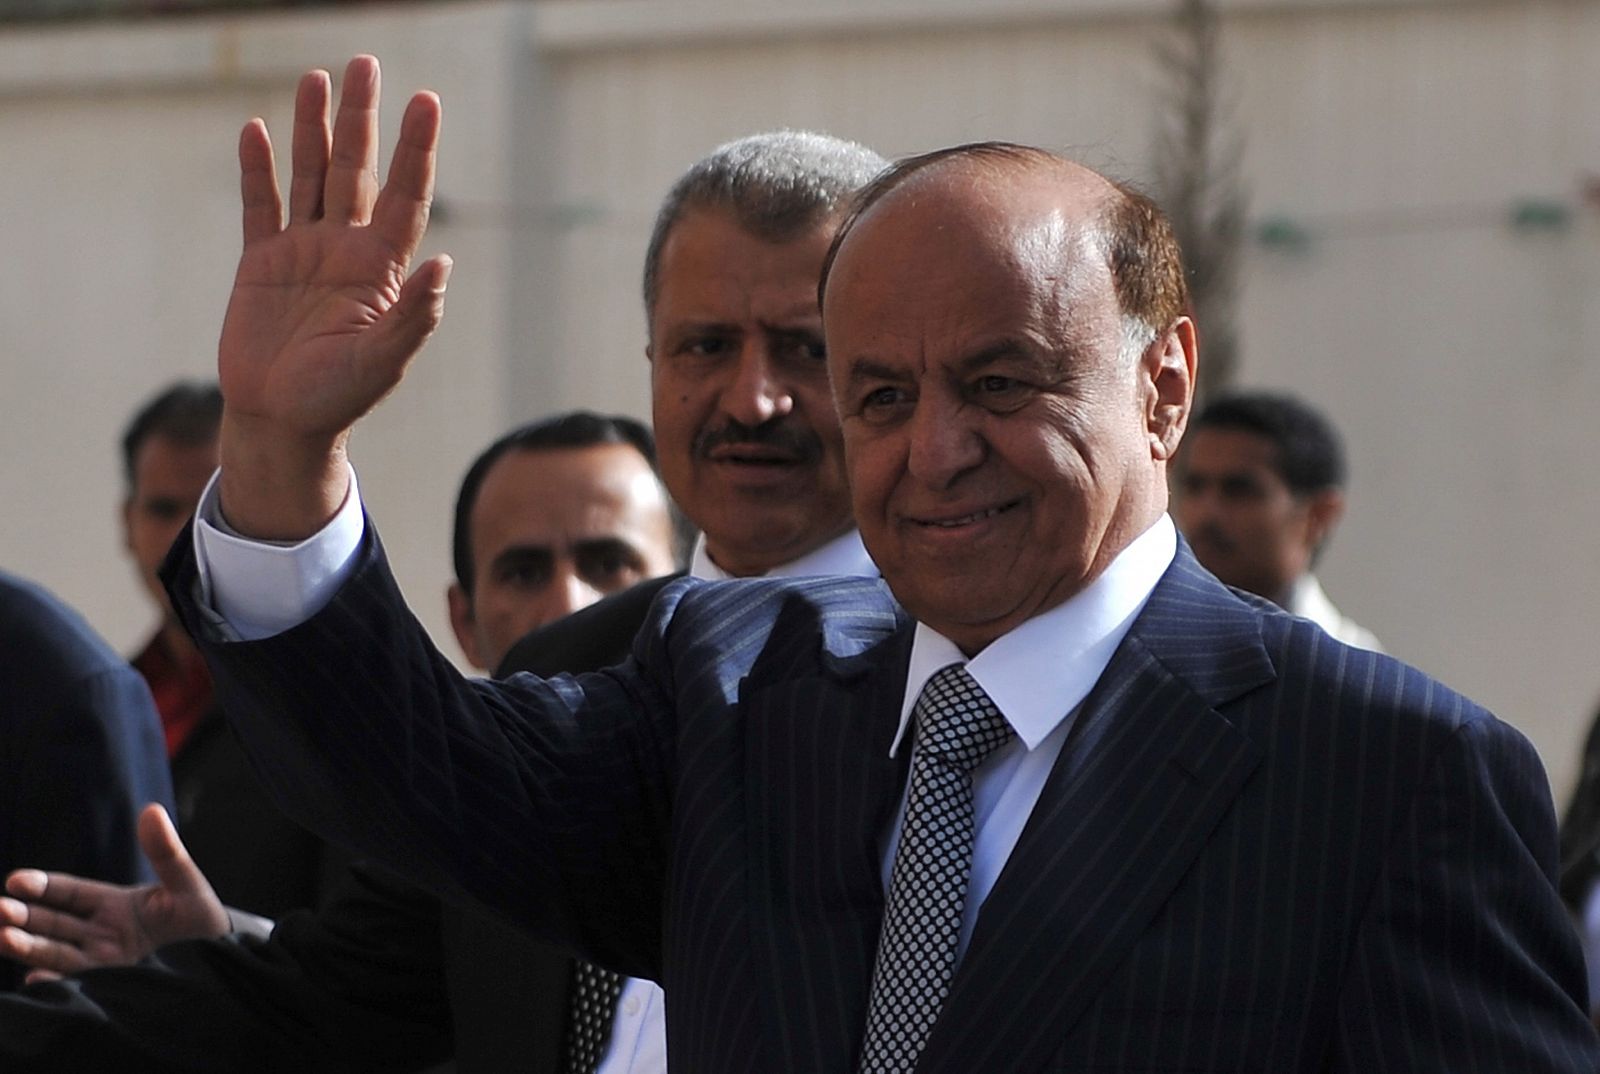 Abdo Rabu Mansur Hadi, vicepresidente yemení y único candidato en las elecciones presidenciales de su país